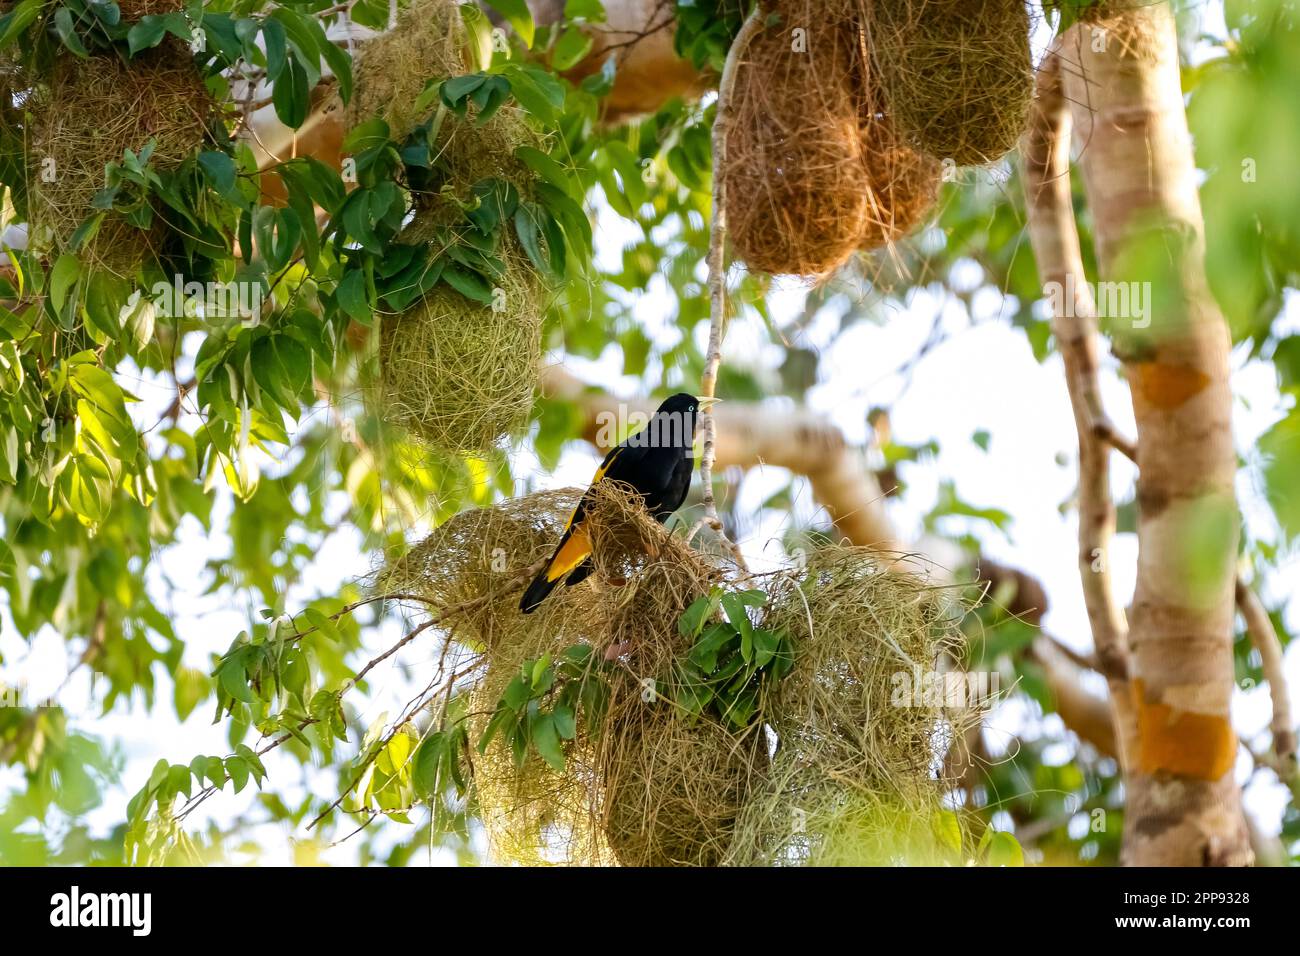 Cacique dal rombo giallo che si aggira sul suo nido artfully tessuto in un albero circondato da altri nidi, San Jose do Rio Claro, Mato Grosso, Brasile Foto Stock